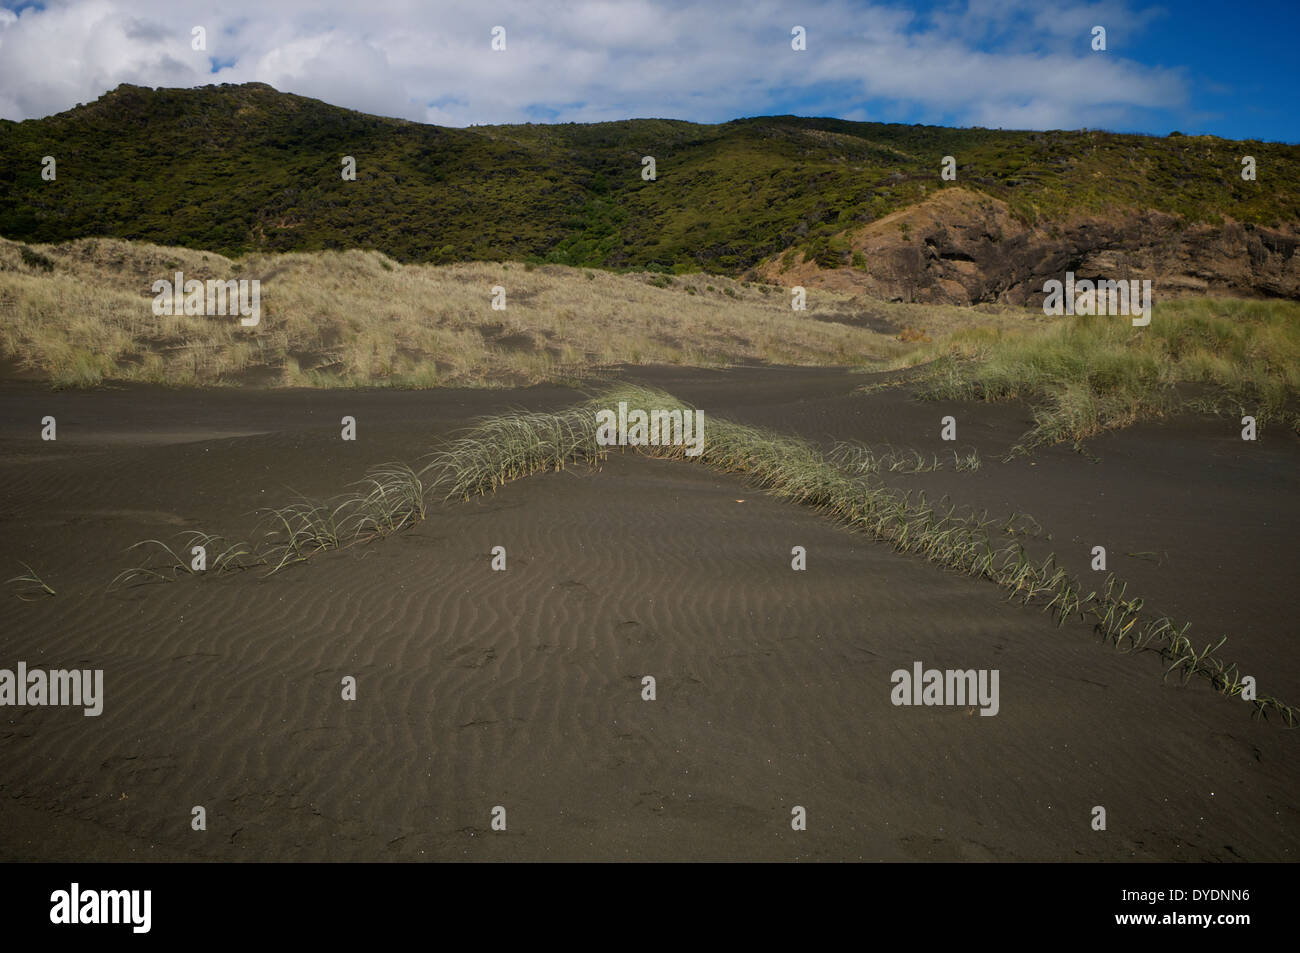 L'herbe a du mal à prendre pied sur le sable volcanique noir à Karekare beach, Waitakere en Nouvelle-Zélande. Banque D'Images